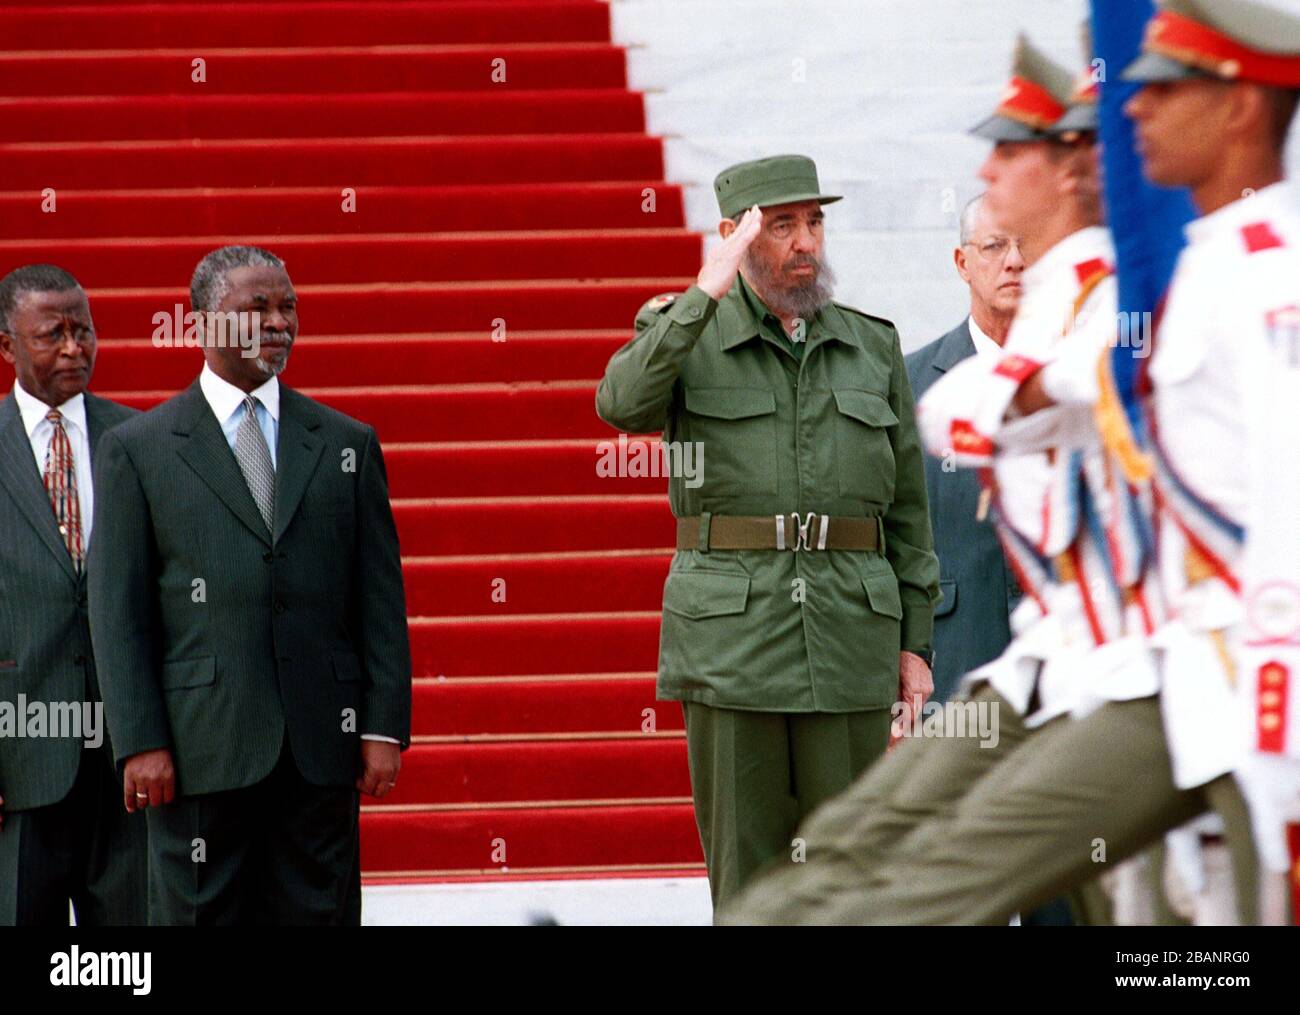 Le président sud-africain Thabo Mbeki et son countepart cubain Fidel Castro l'examen de la garde présidentielle, à La Havane le 27 mars 2001 au Palais de la Révolution. C'est le deuxième jour d'une visite de quatre jours par le chef de l'Afrique du Sud de l'île des Caraïbes sous domination communiste, qui était un important soutien de la lutte armée contre l'apartheid. Inscrivez-lit "Conseil." Crédit : Jorge Rey/MediaPunch Banque D'Images